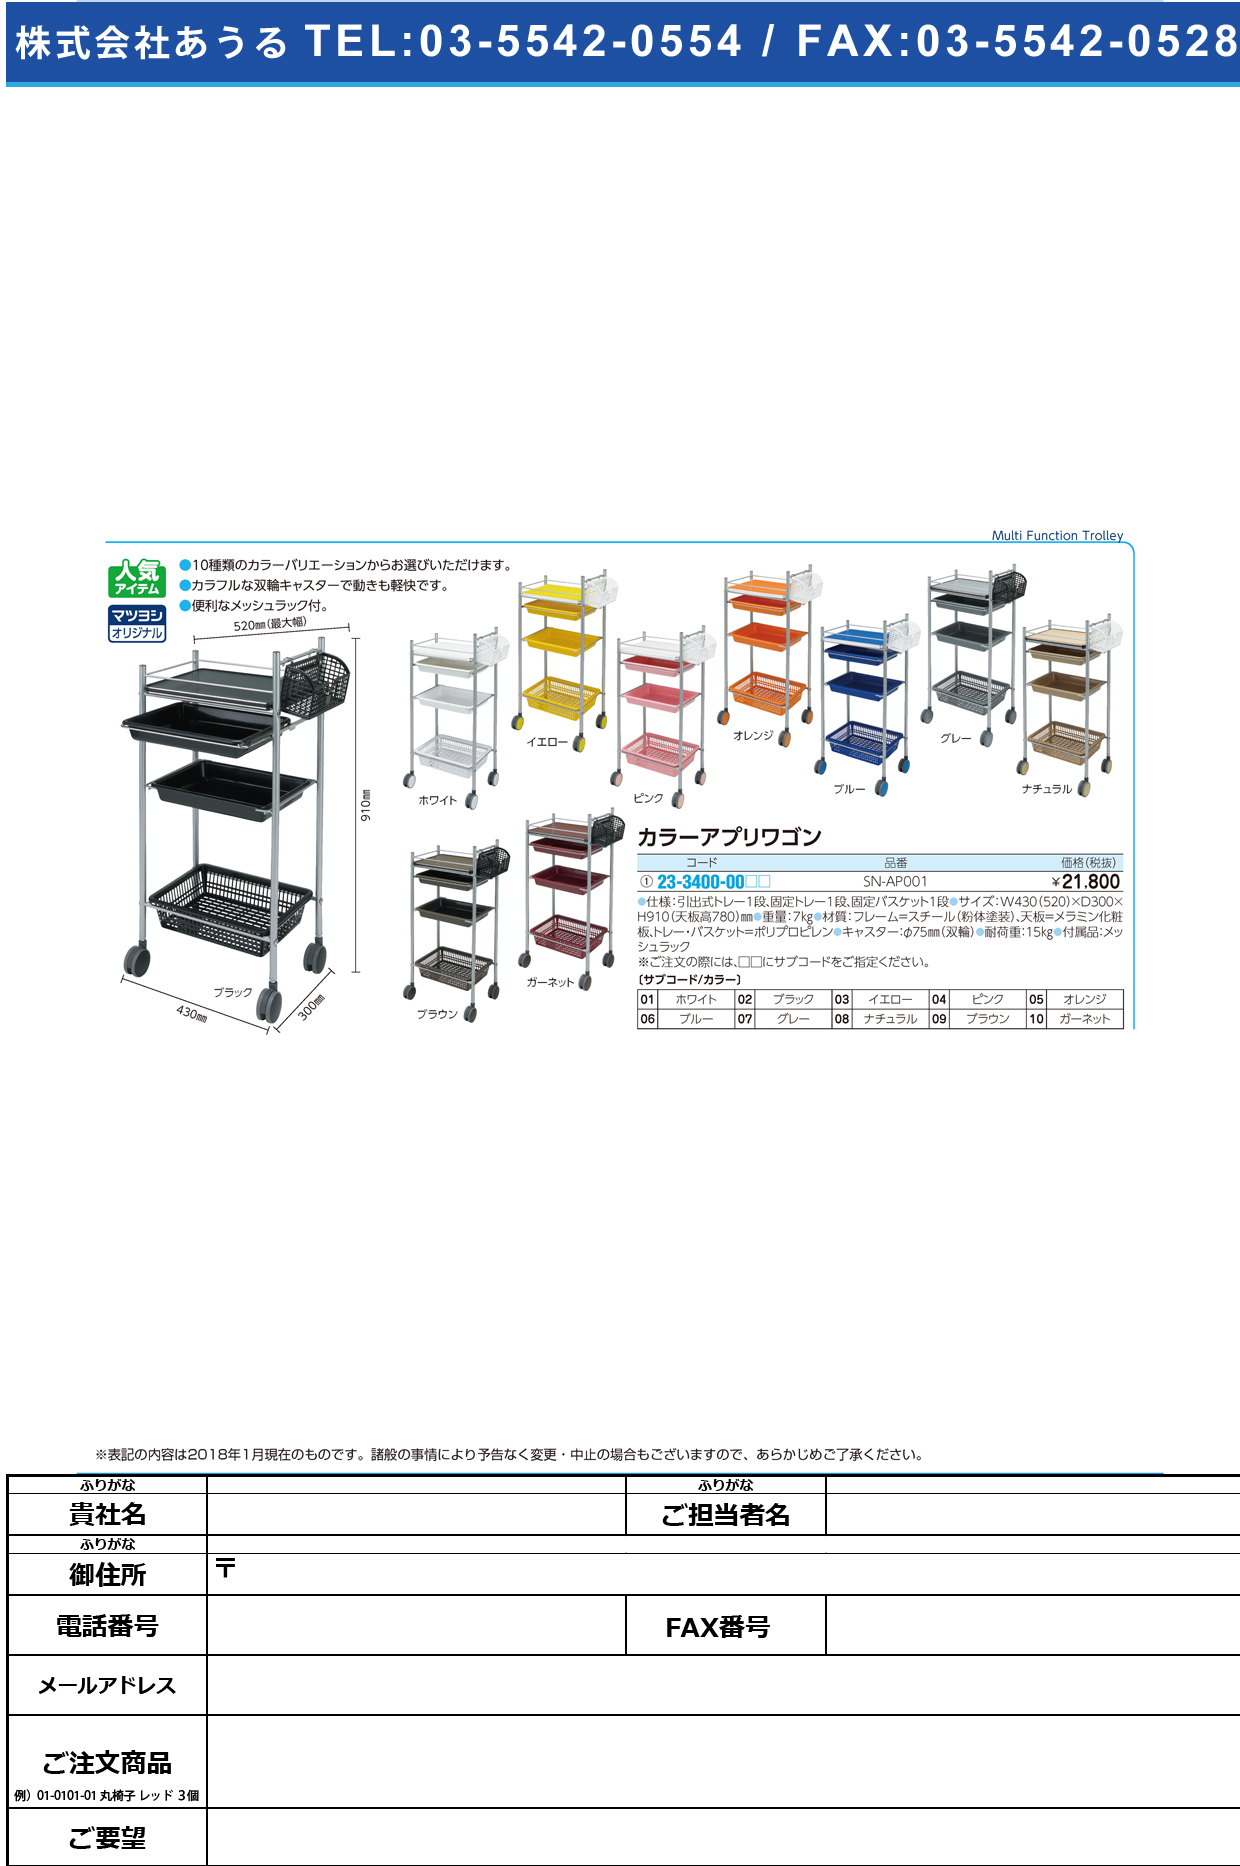 (23-3400-00)カラーアプリワゴン SN-AP001 ｶﾗｰｱﾌﾟﾘﾜｺﾞﾝ ブラック【1台単位】【2019年カタログ商品】